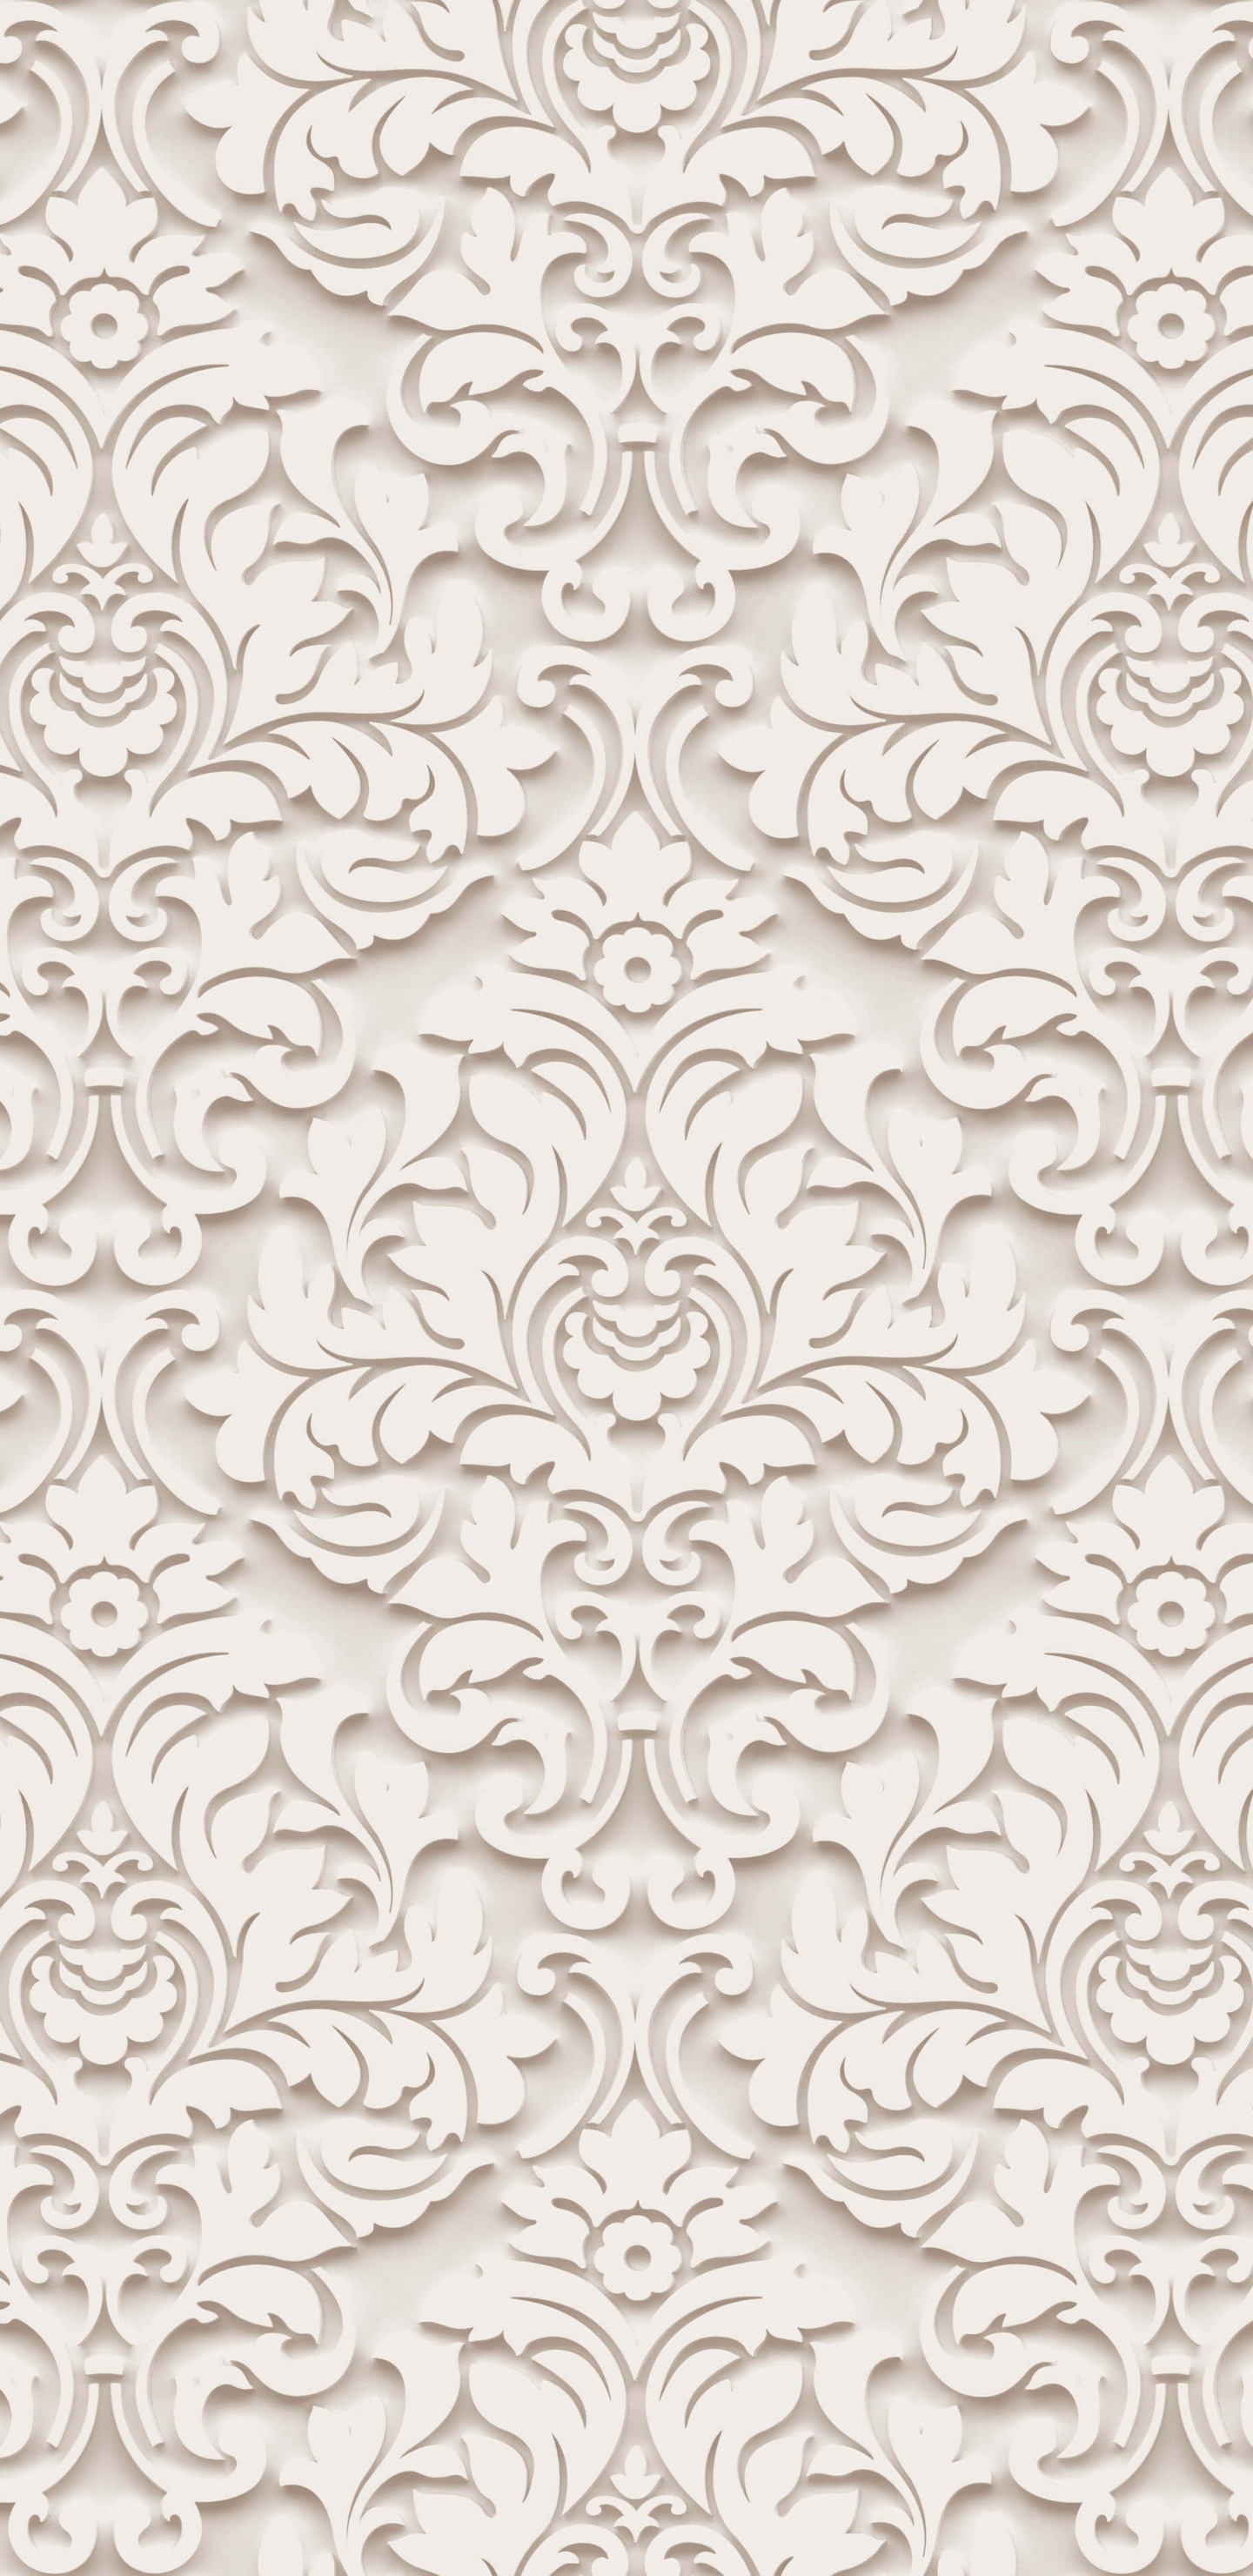 Textile Floral Blanc et Noir. Wallpaper in 1440x2960 Resolution